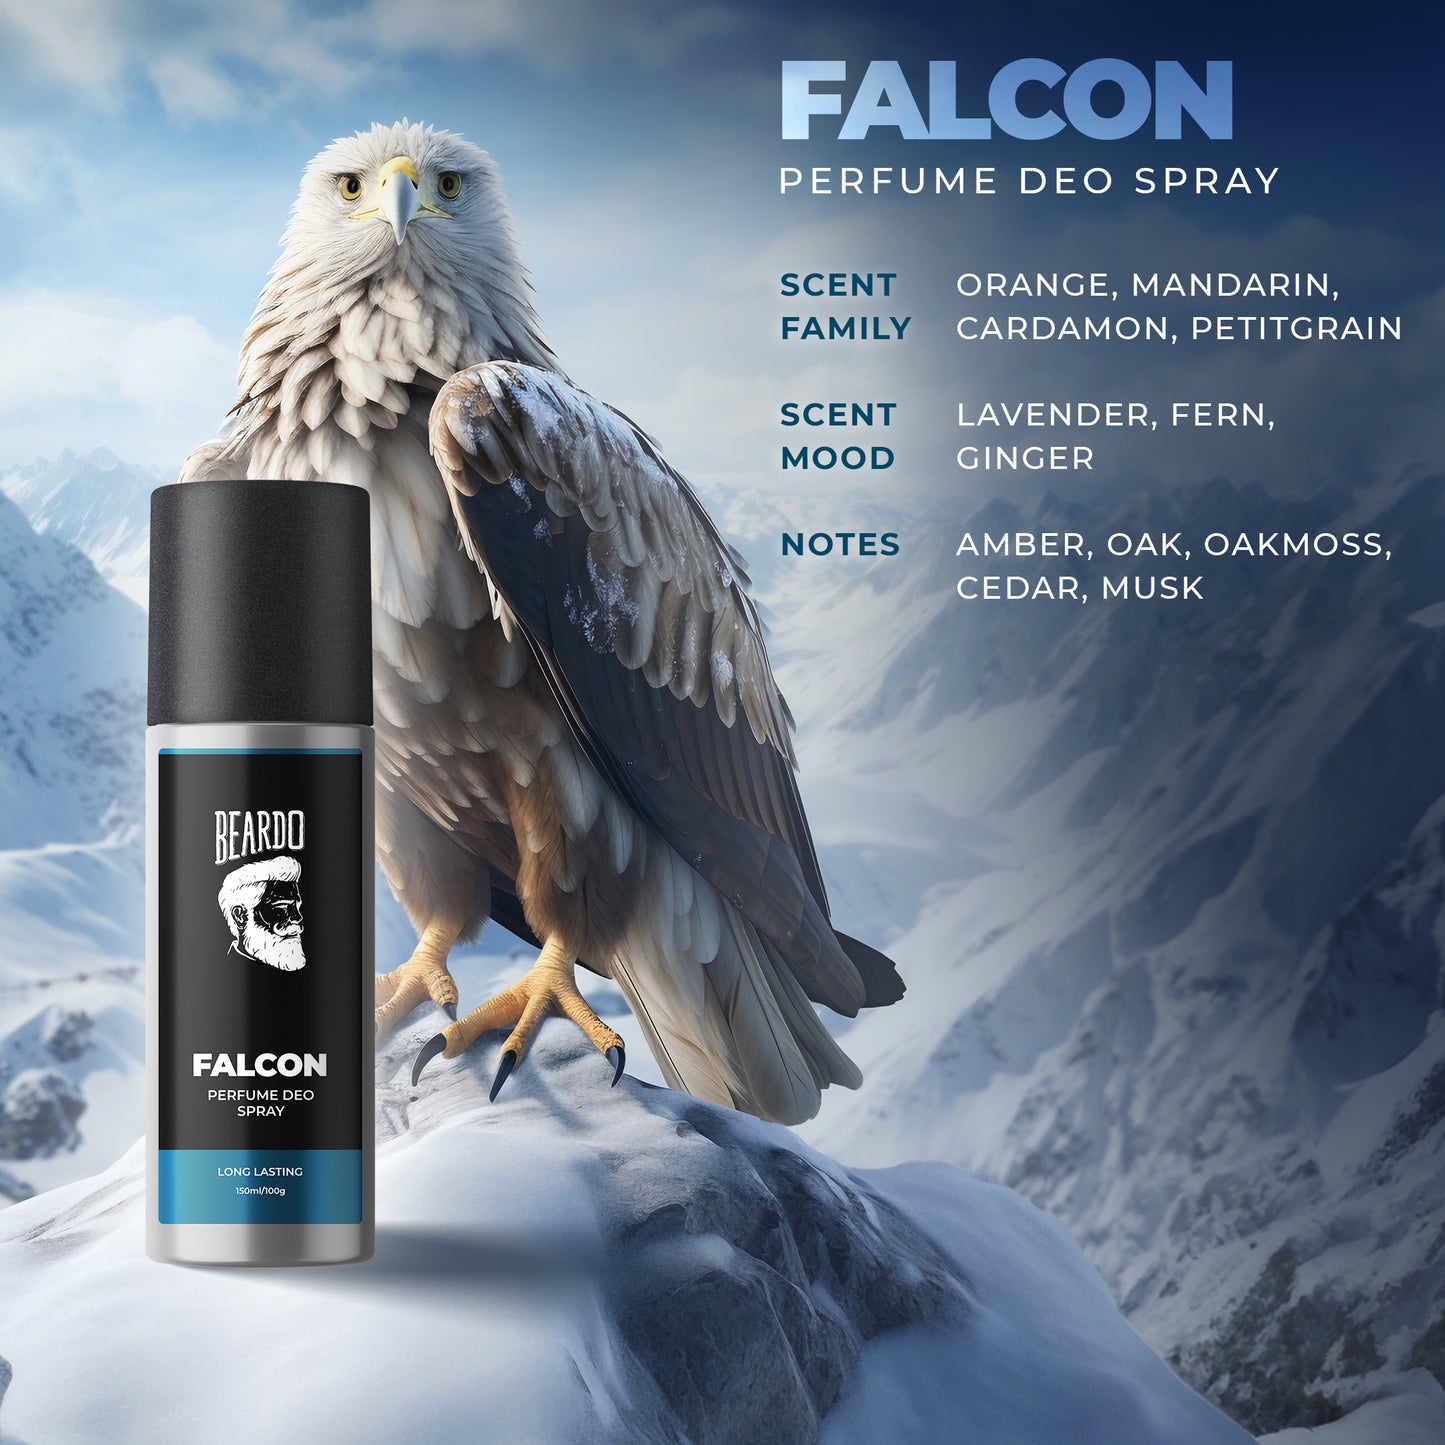 Beardo Falcon Perfume Deo Spray (150ml)